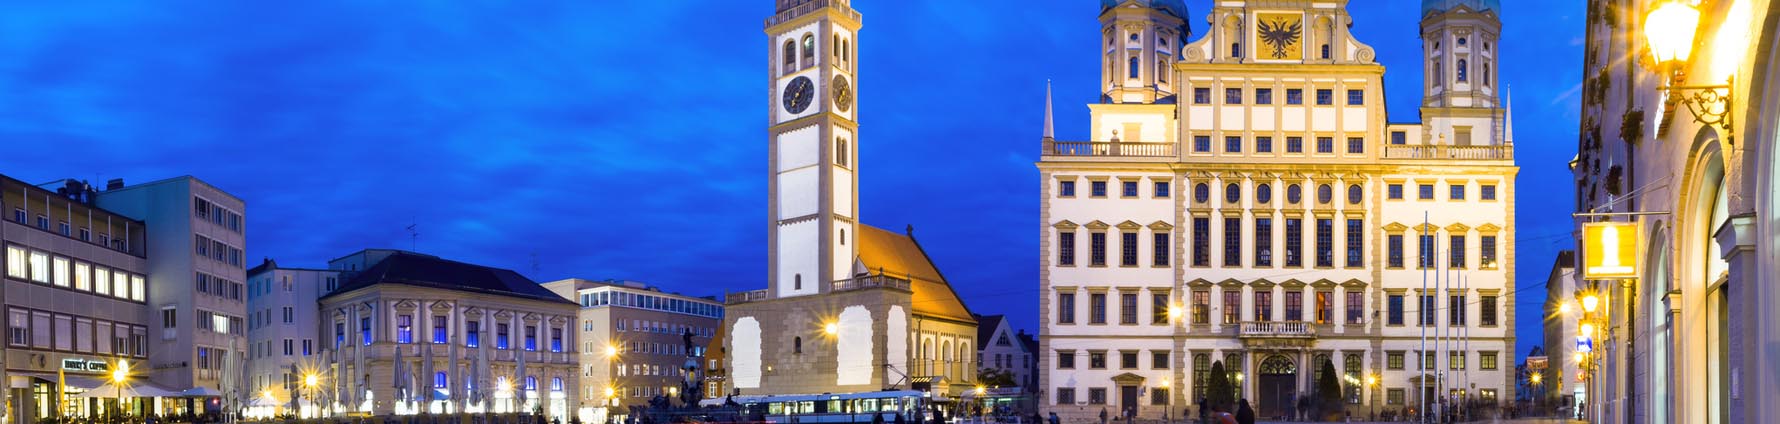 Stadt Augsburg case study header